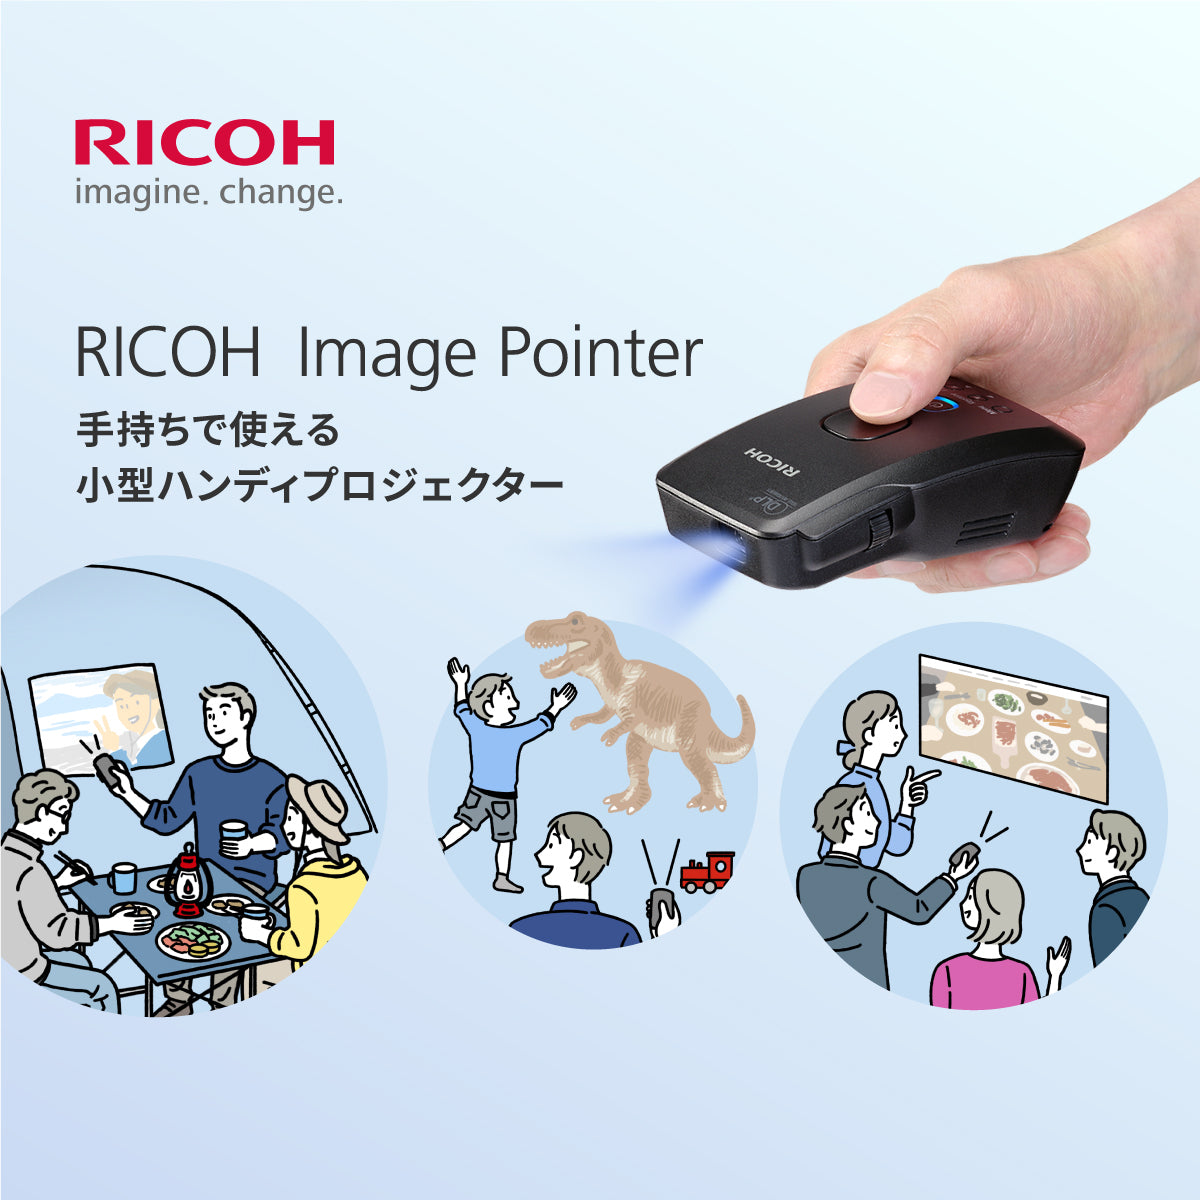 RICOH Image Pointer | リコー